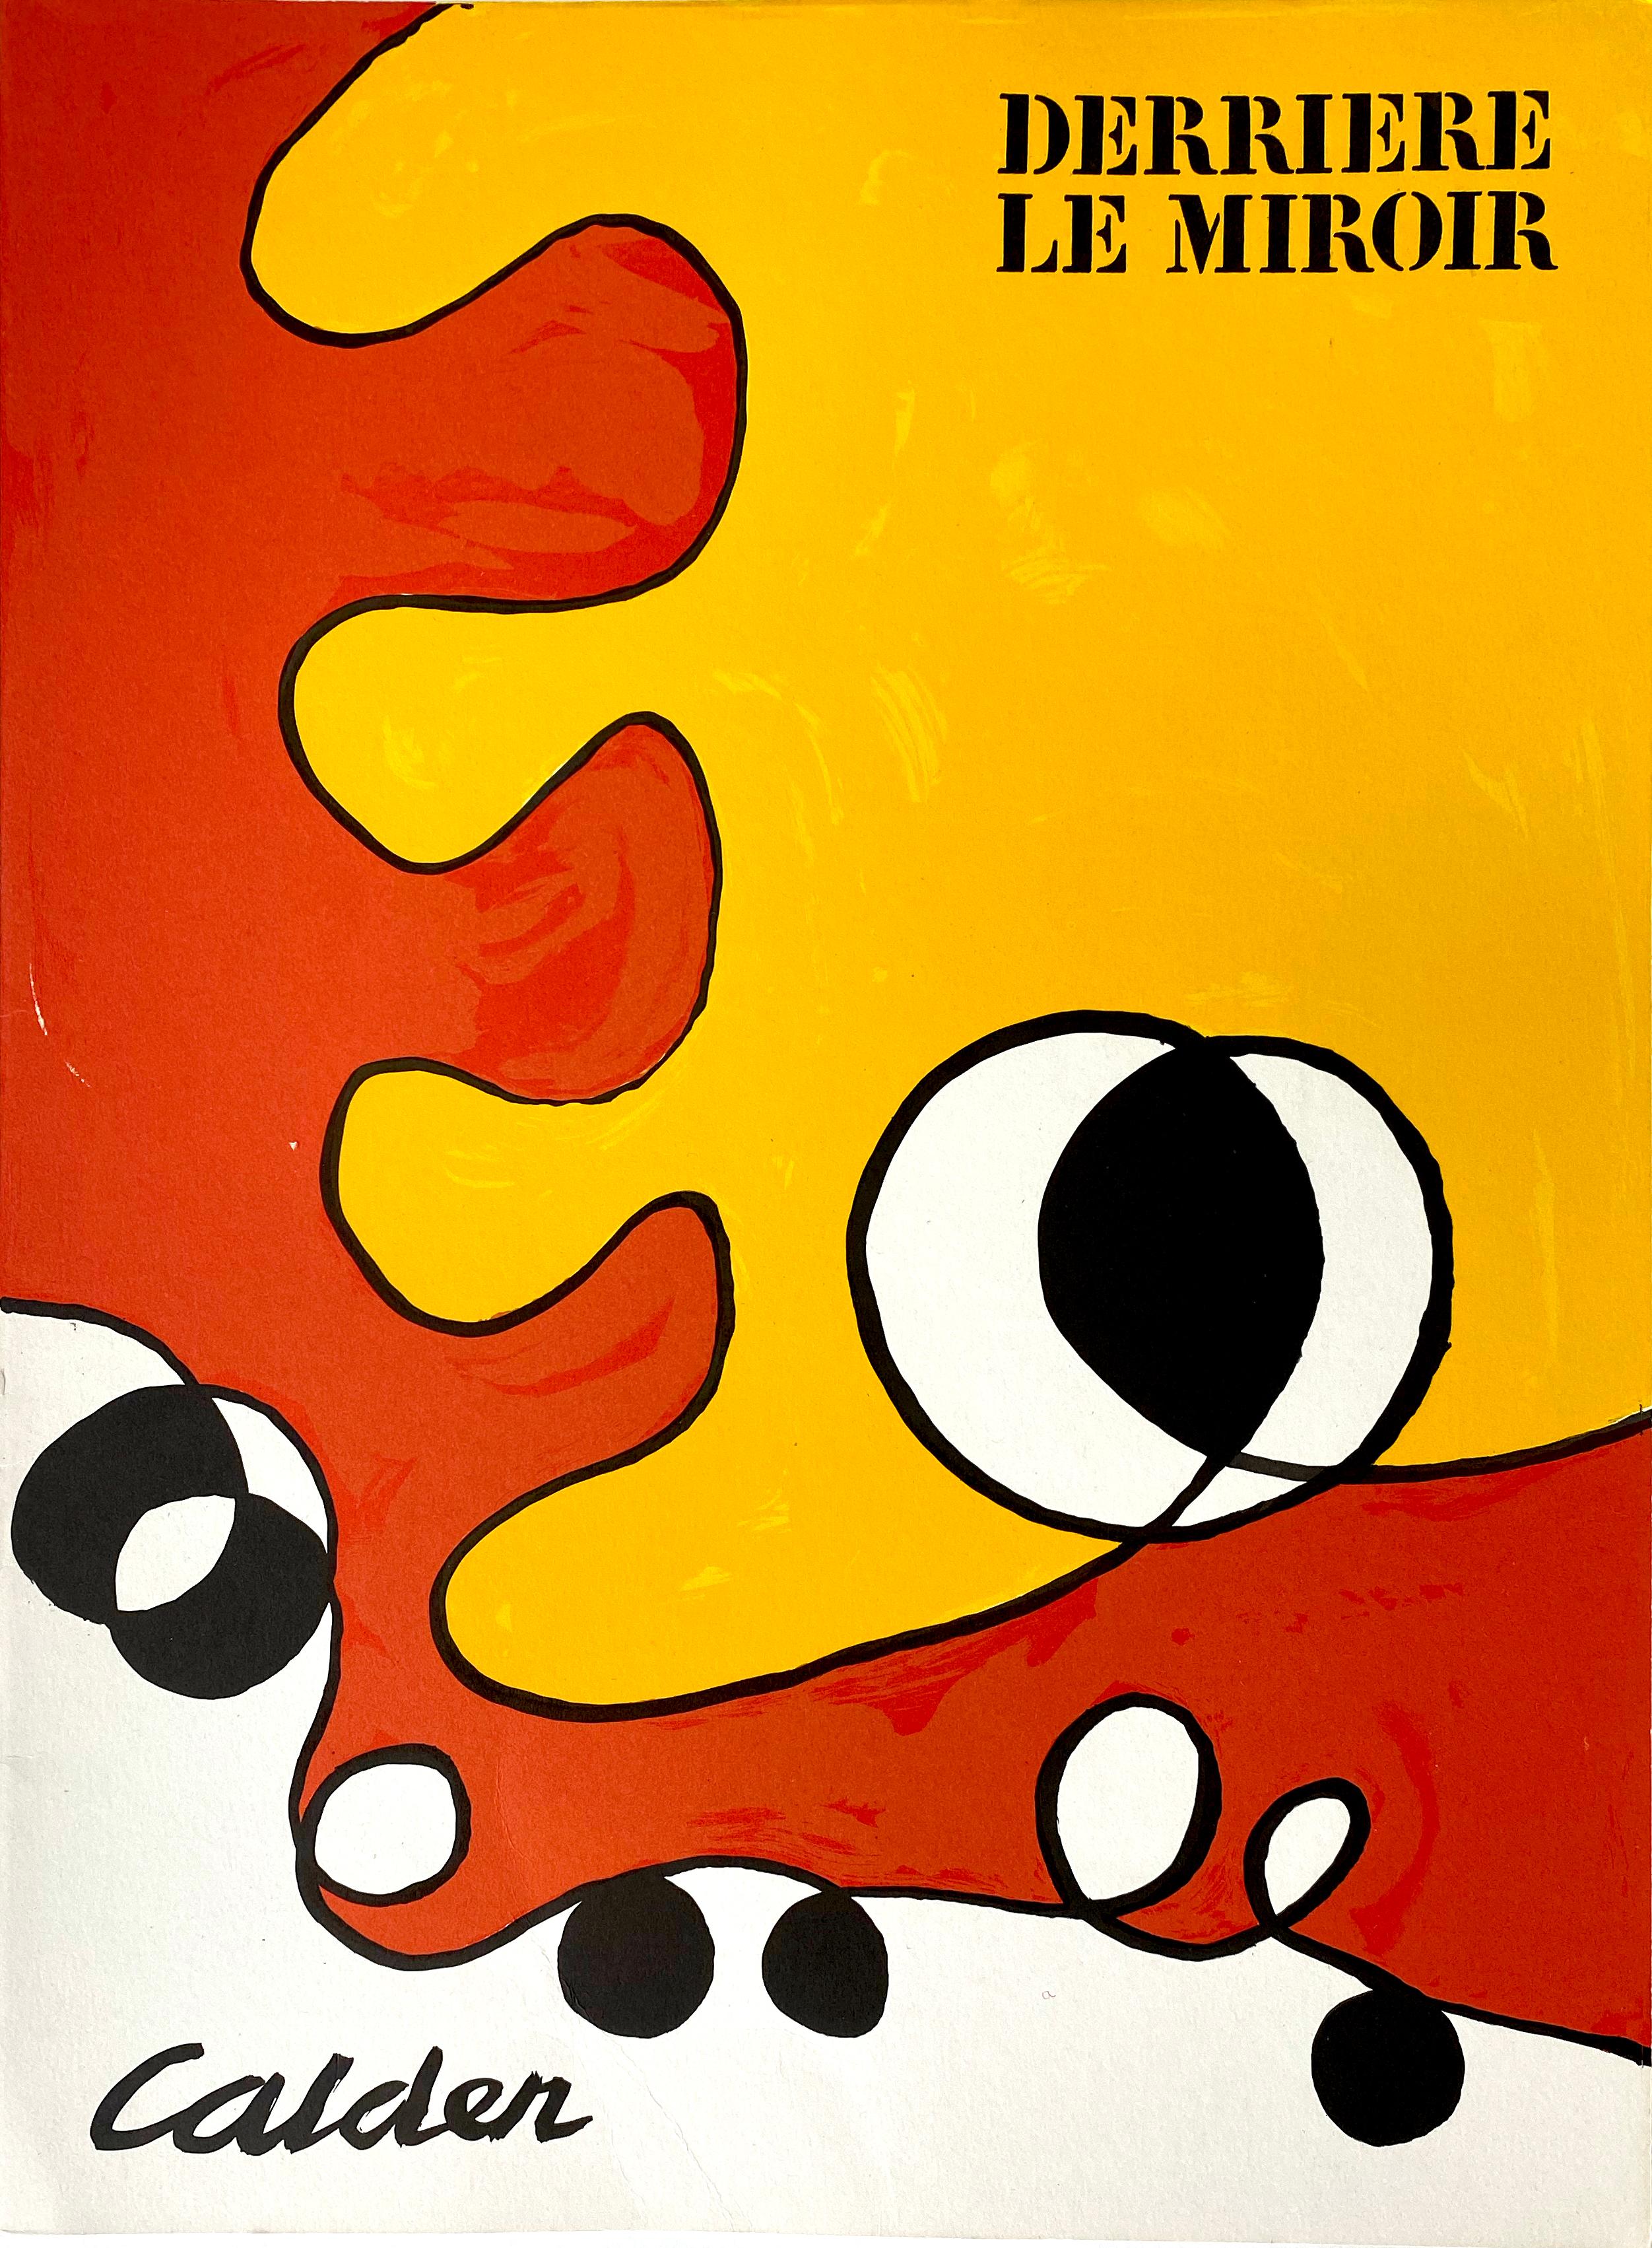 Alexander Calder Abstract Print - Derriere Le Miroir No. 173, Cover